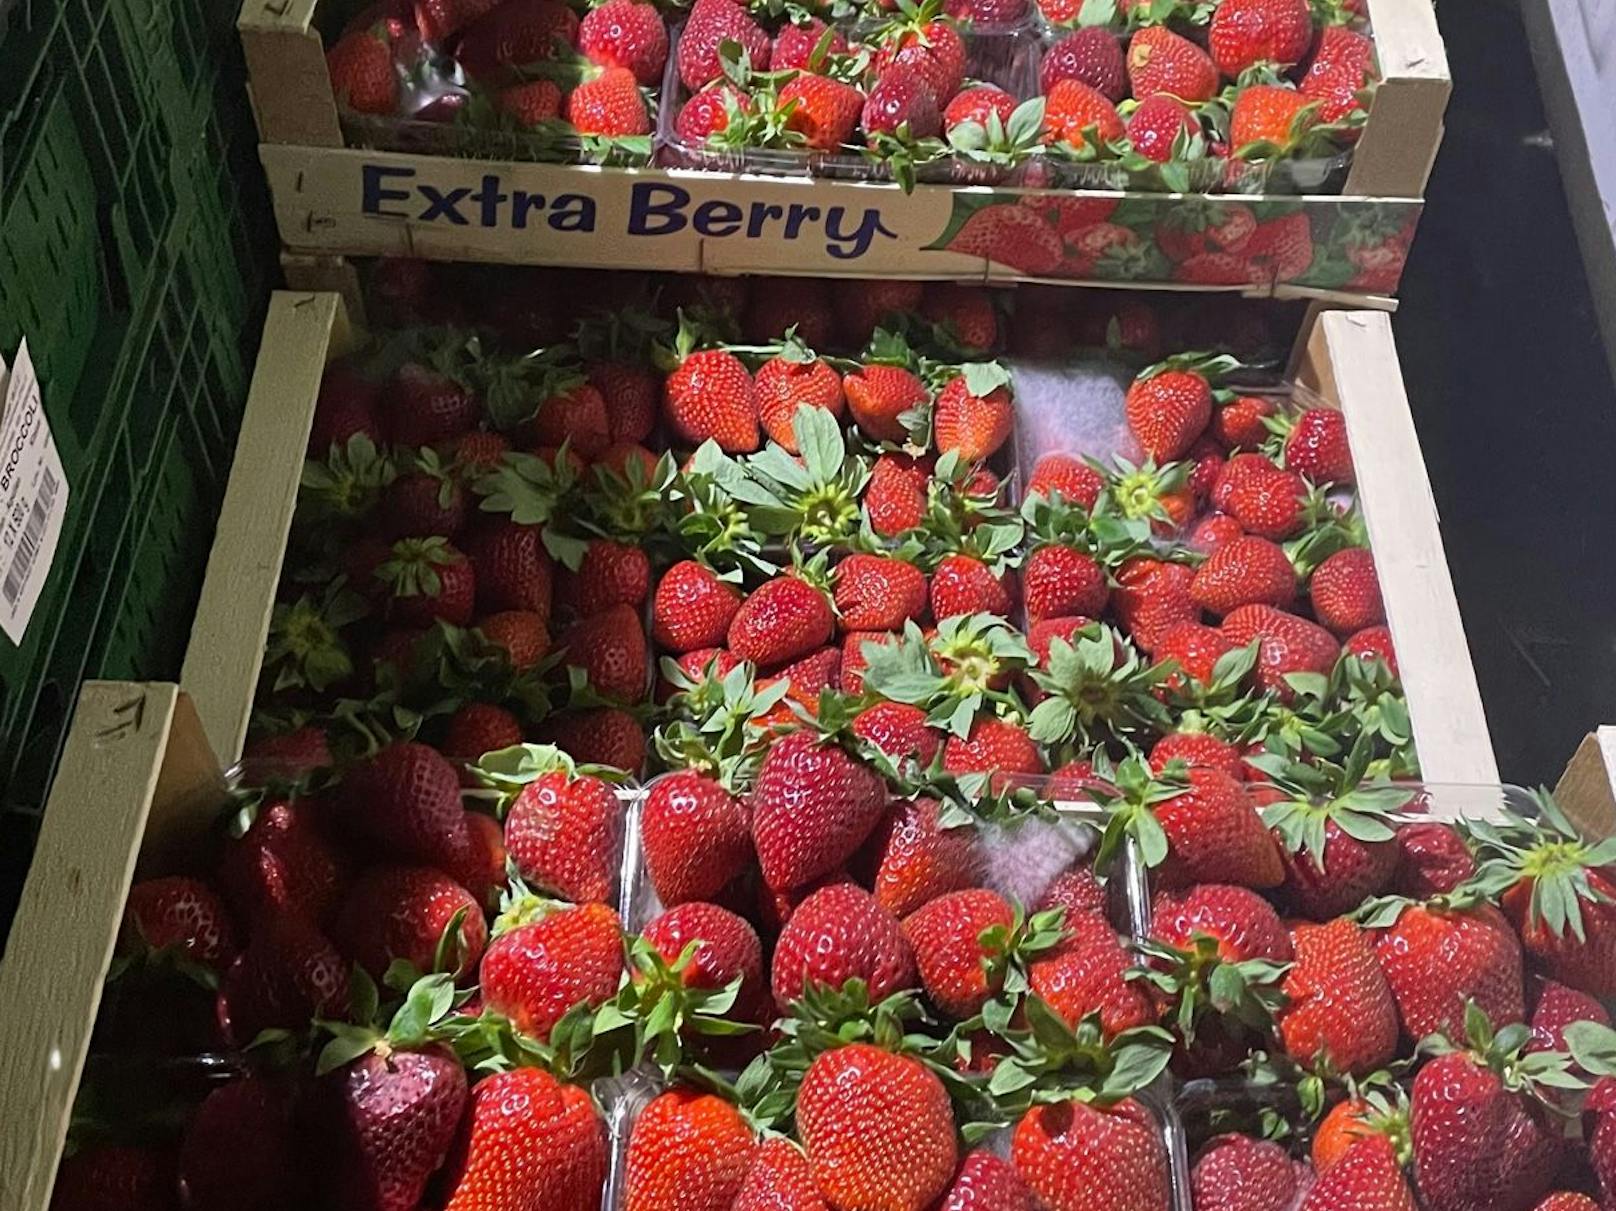 Bei einer Kontrolle am Wiener Großmarkt entdeckten die Prüfer 230 Kilo verdorbene Erdbeeren.